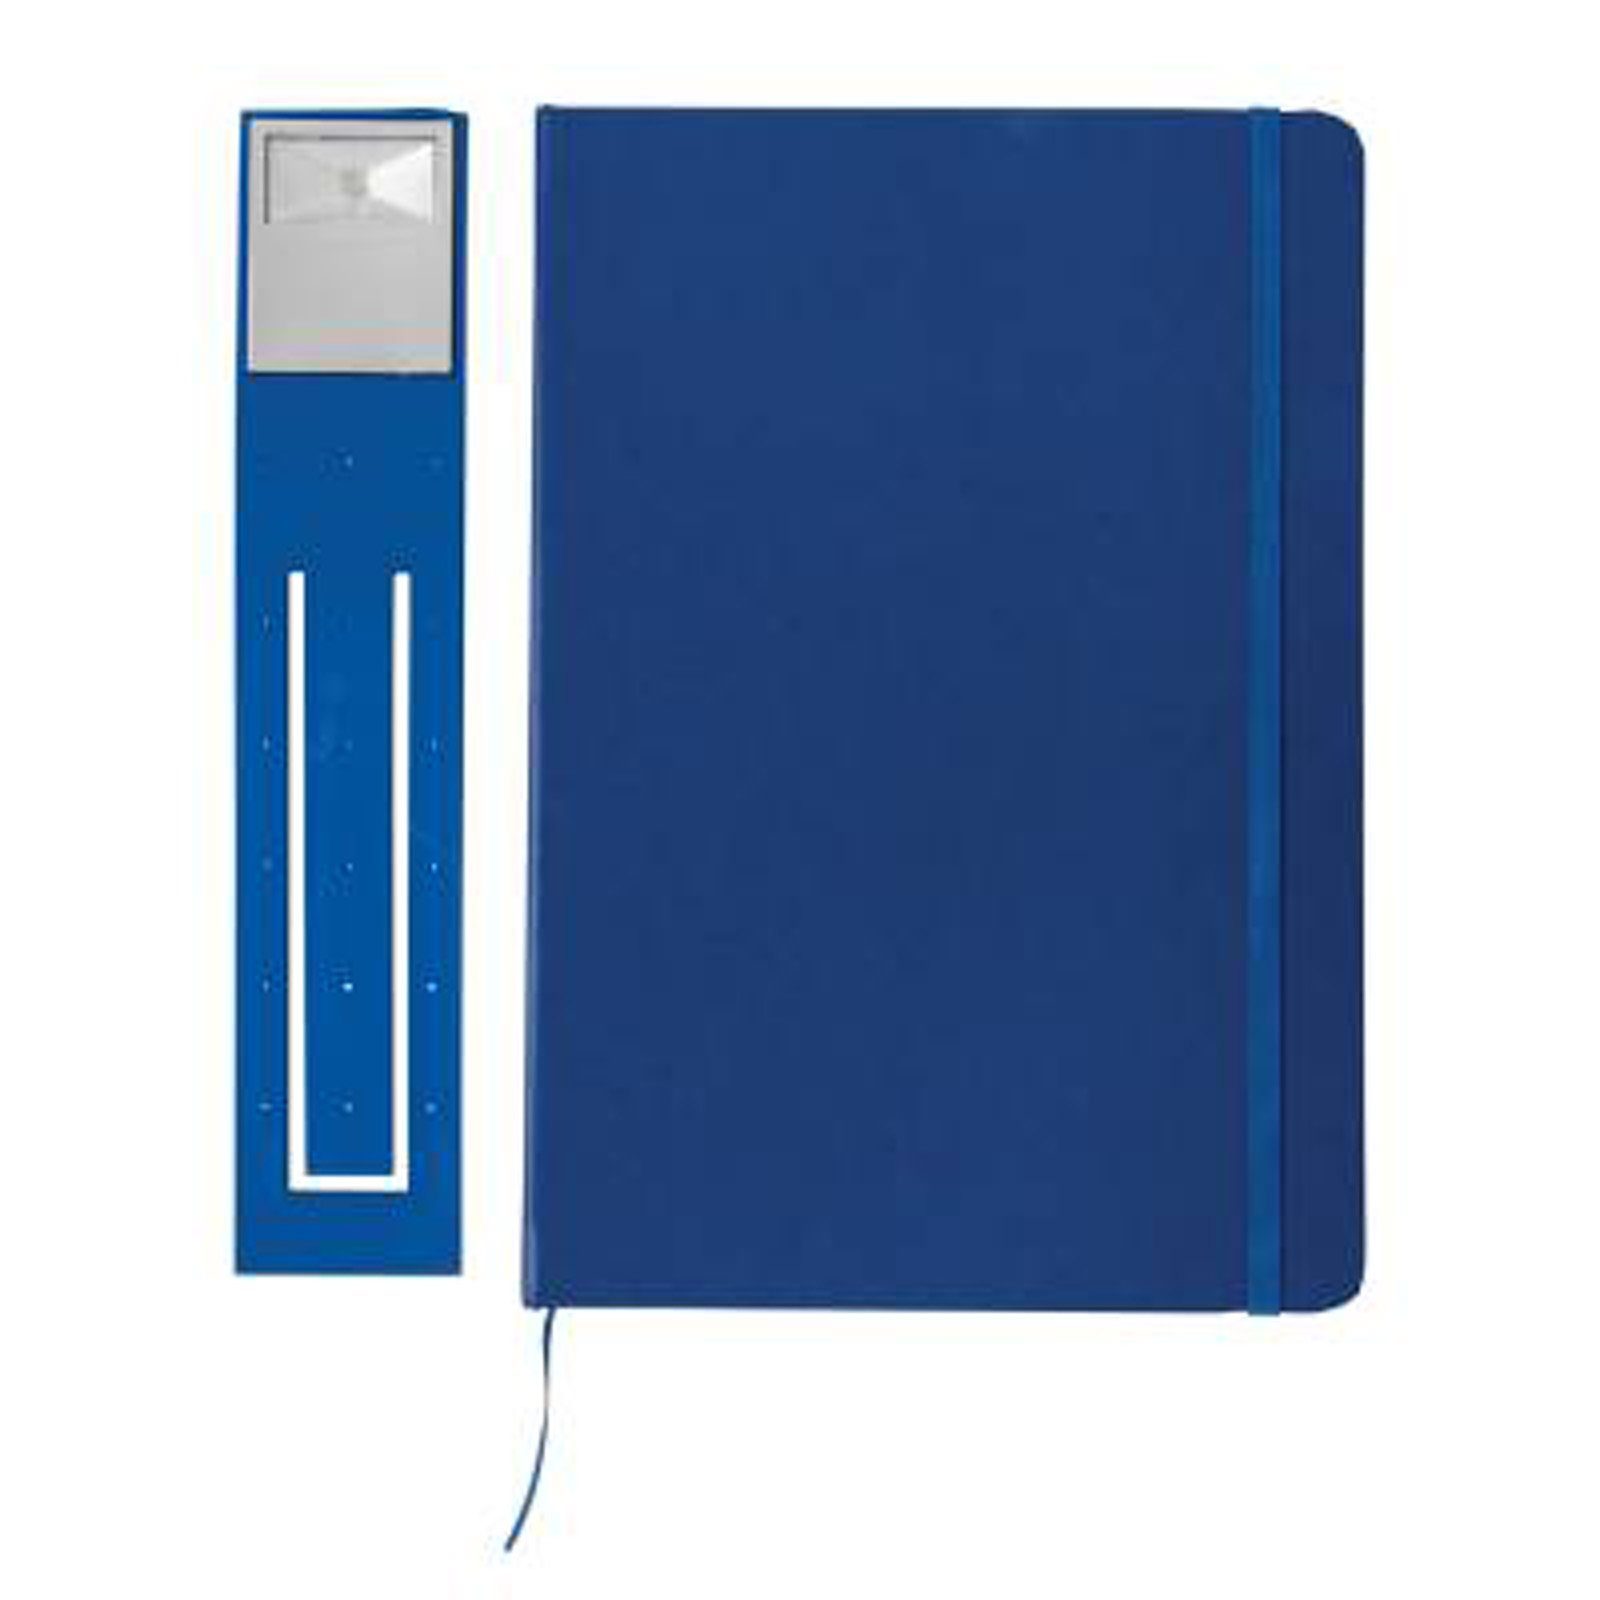 cremeweiße mit Collection XD A5 Lesezeichen LED mit Gummiband Hardcover Notizblock Liniert, Seiten 160 Leselampe blau & Notizbuch